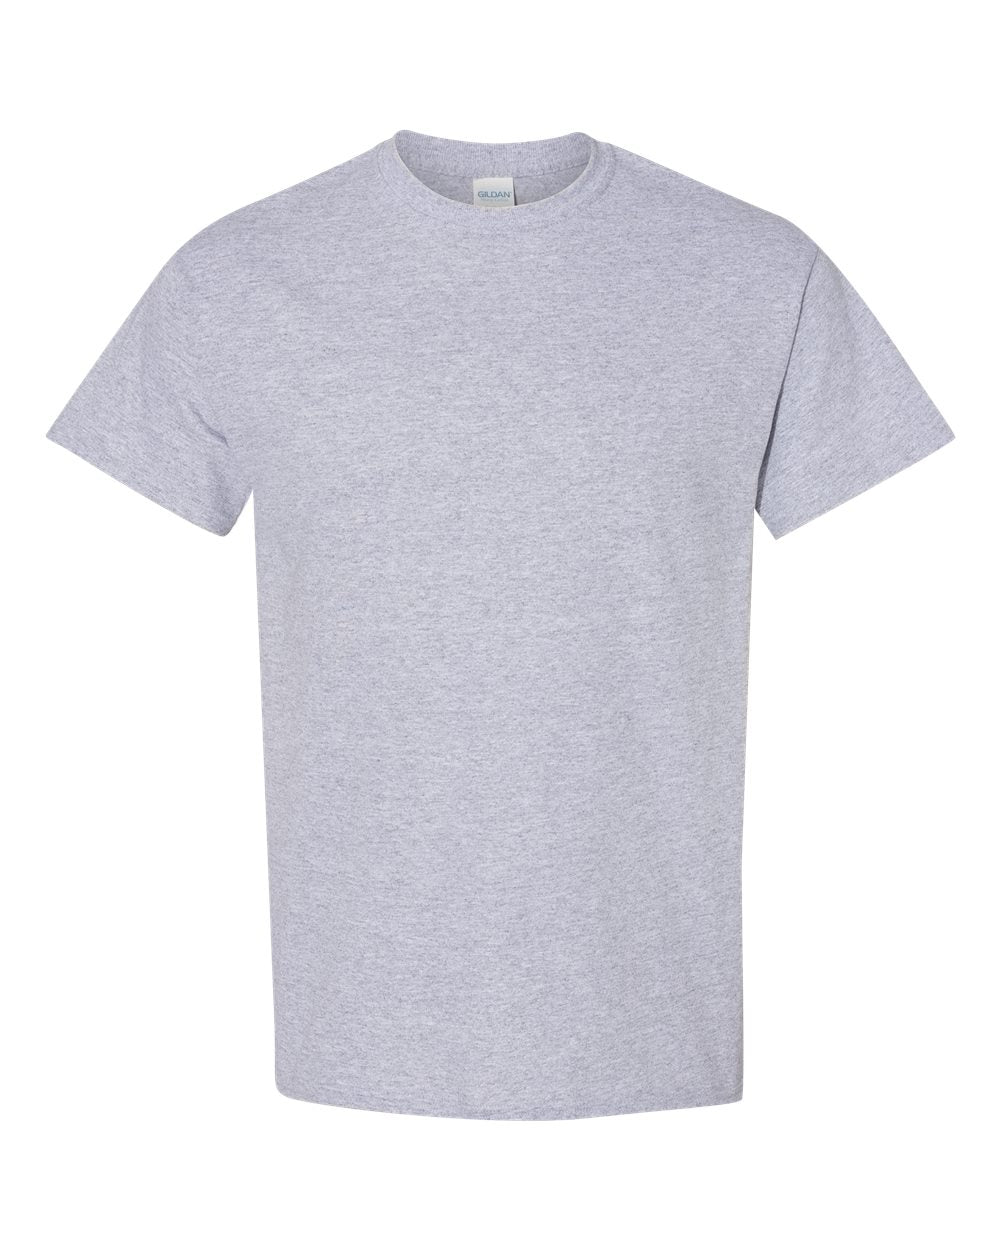 Seltzer Slut Adult Unisex Cotton T-Shirt - 11